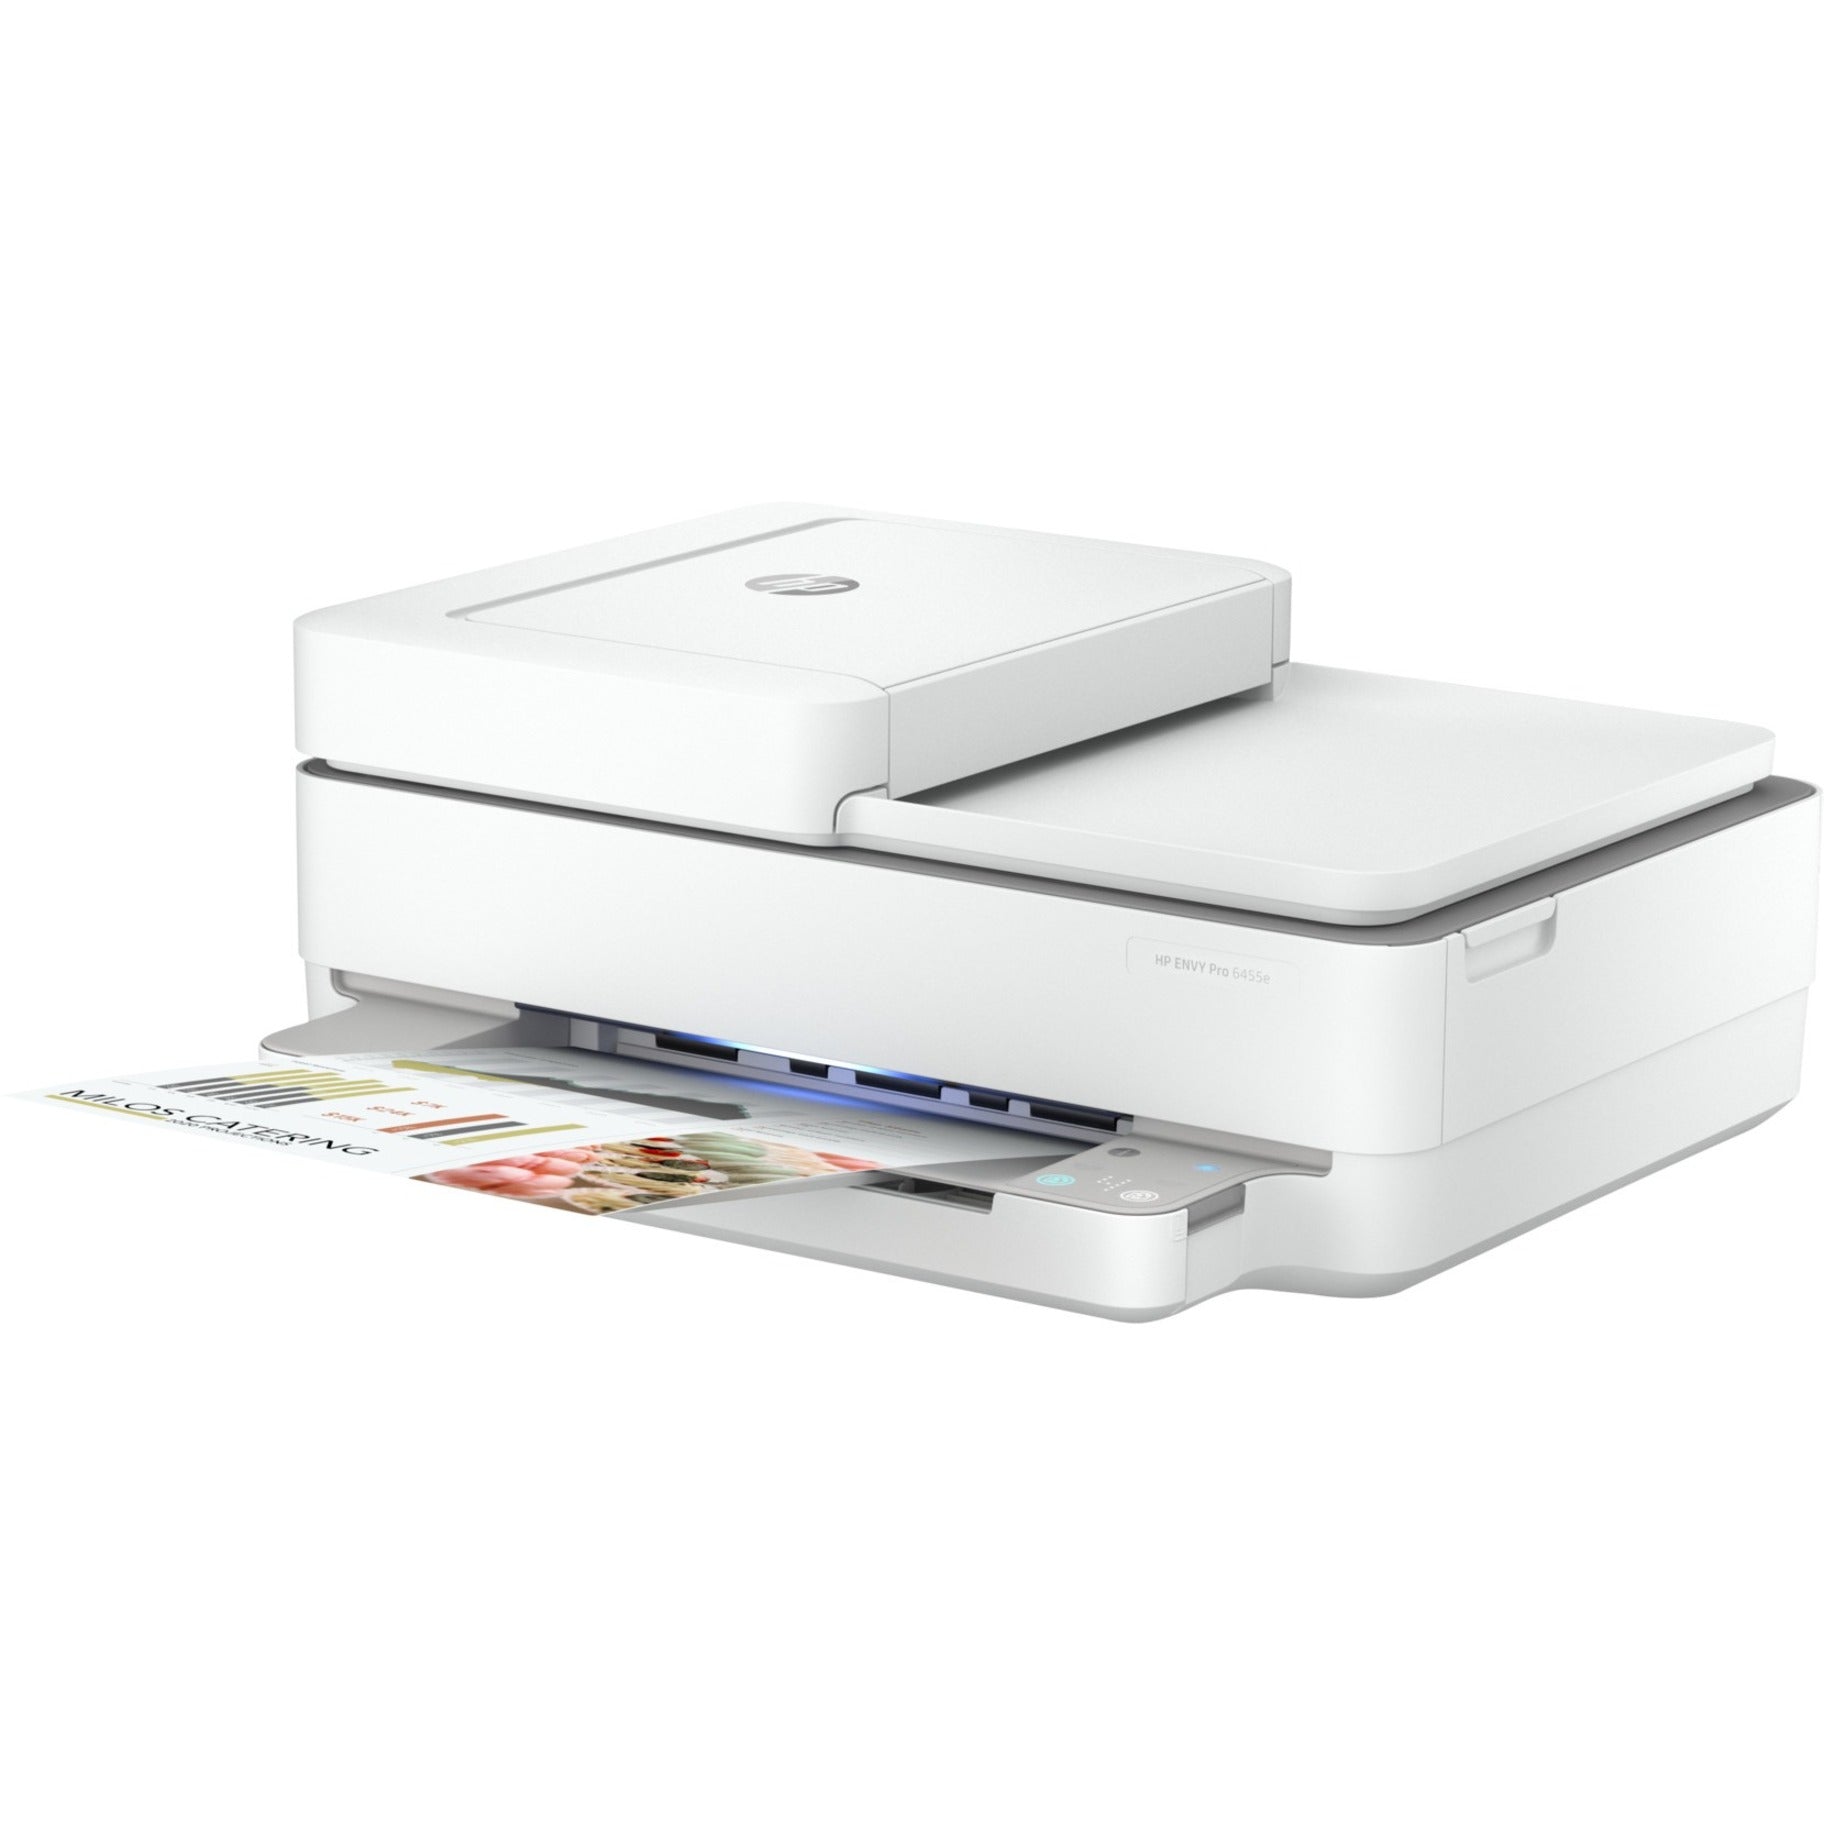 HP ENVY 6455e All-in-One Printer 223R1A#B1H, Wireless Color Printer